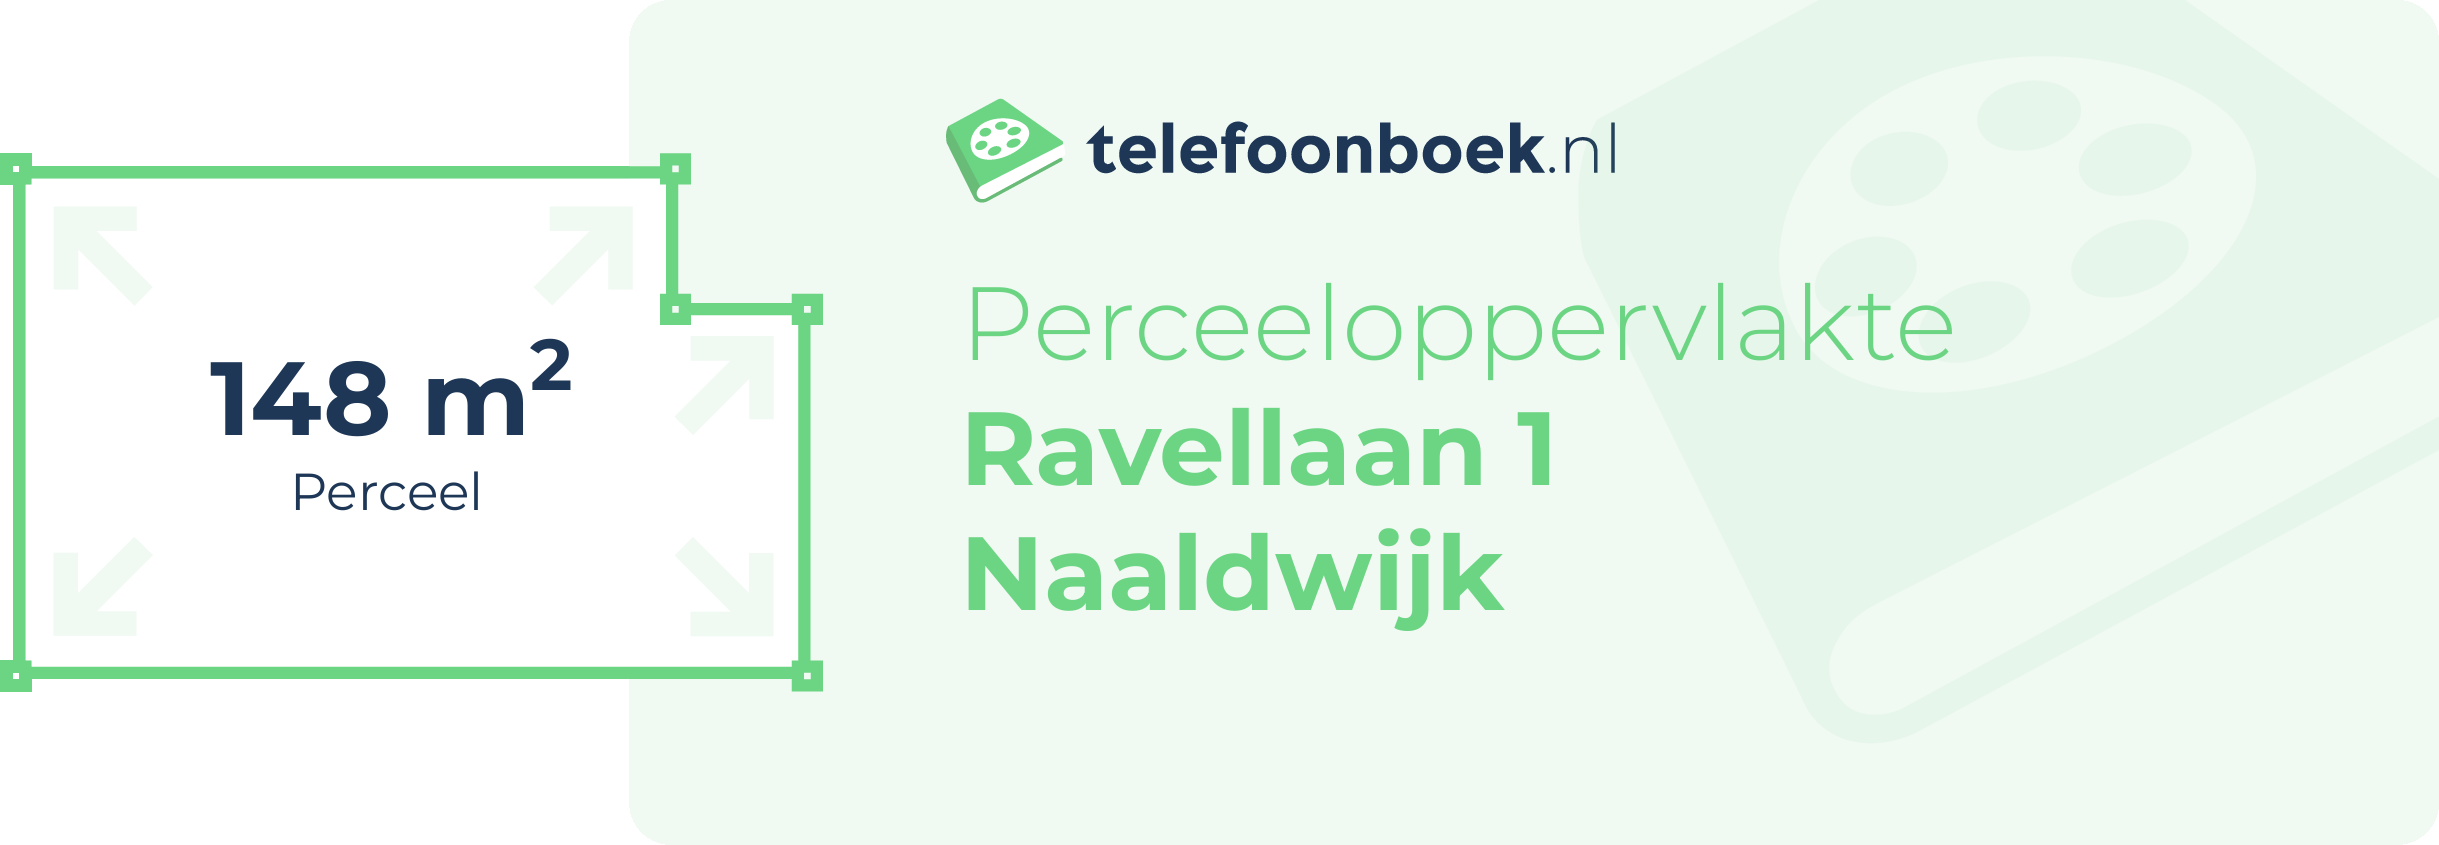 Perceeloppervlakte Ravellaan 1 Naaldwijk